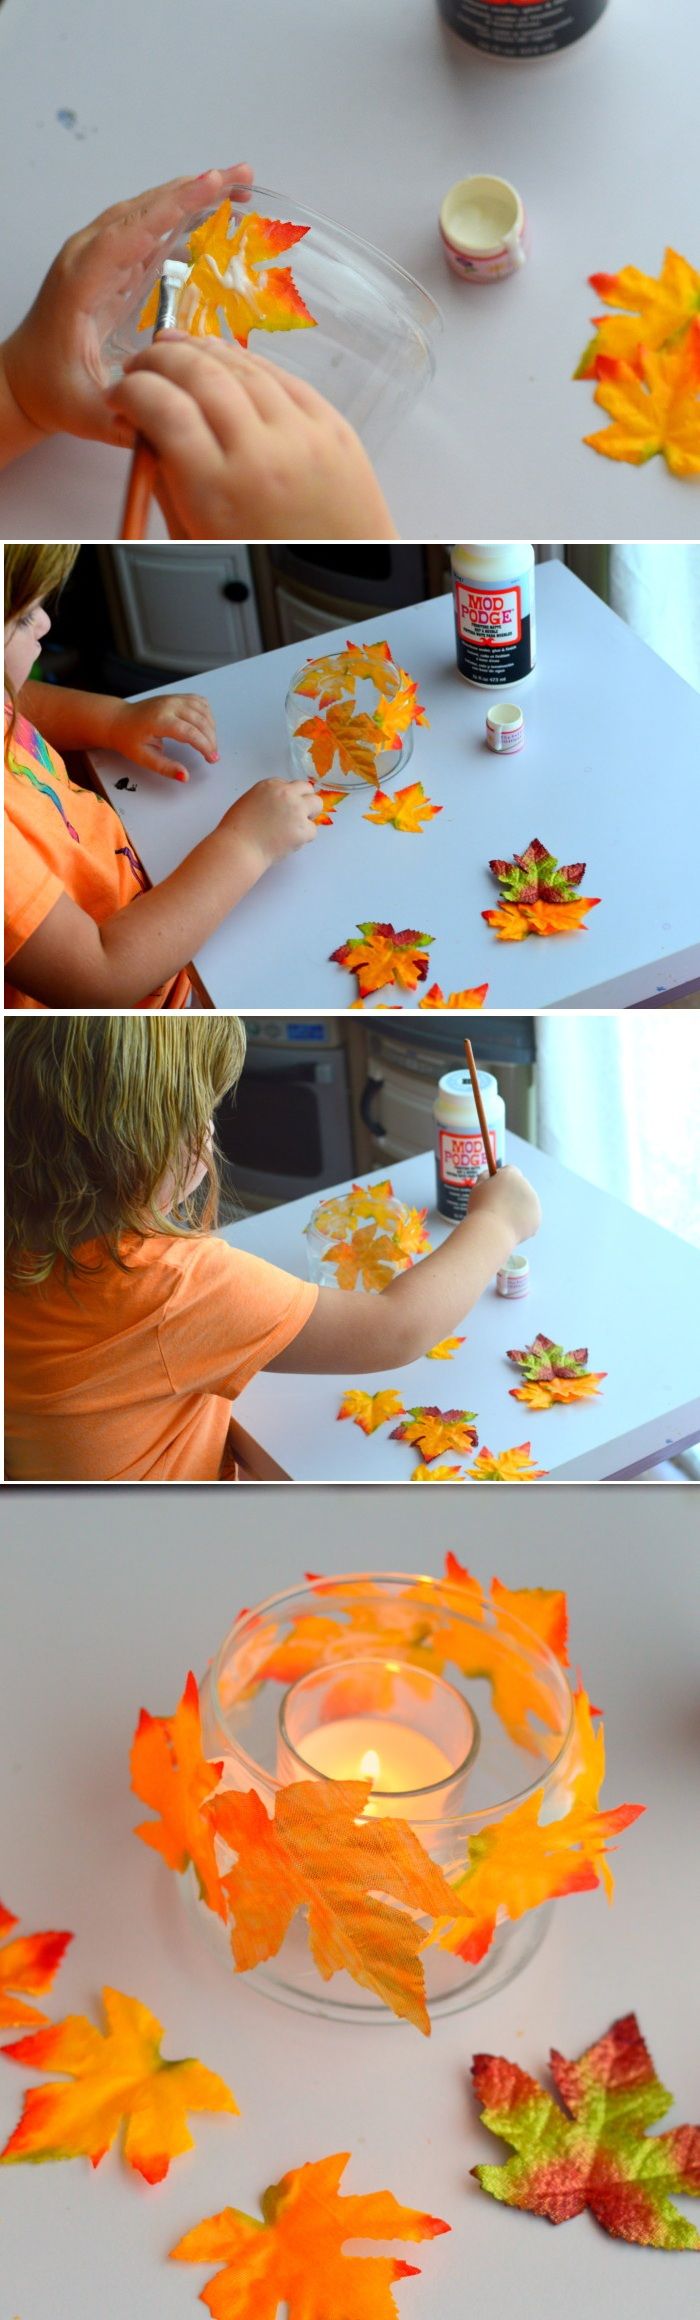 tinker med barn, glasstakehållare dekorerade med löv, lim, höstdekoration